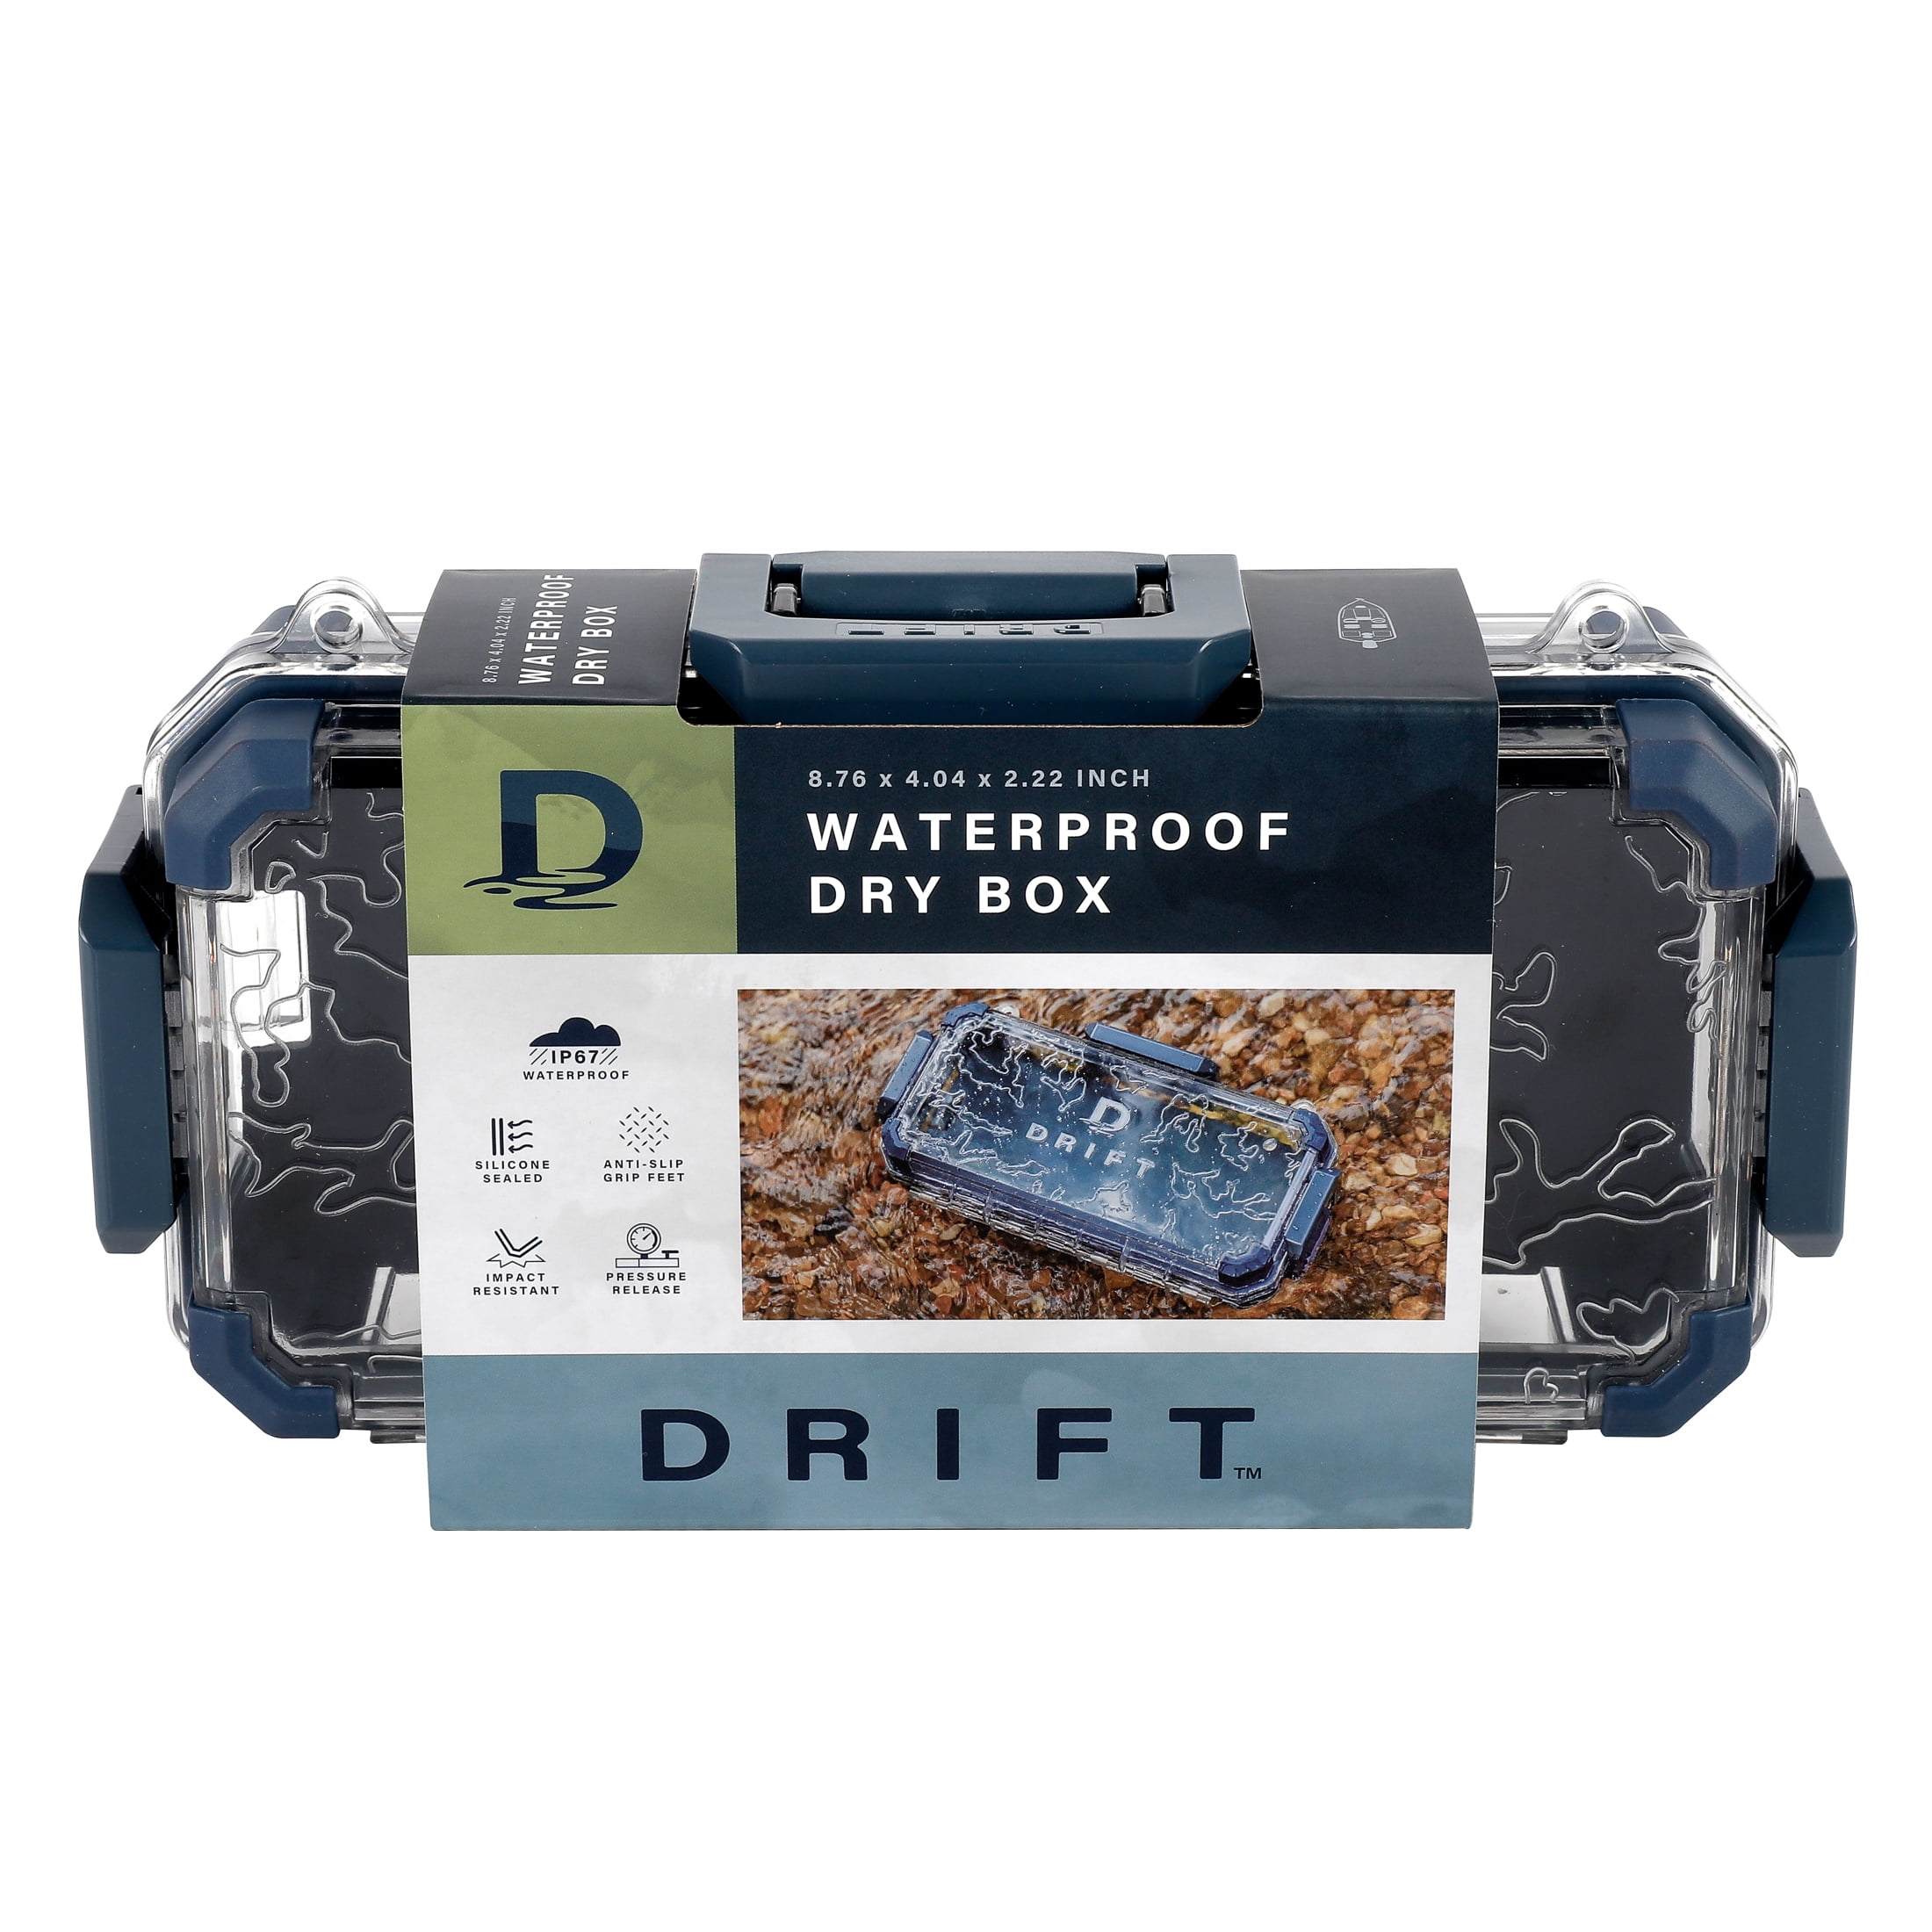 Drift Waterproof Marine Dry Box, 10 inch x 5 inch